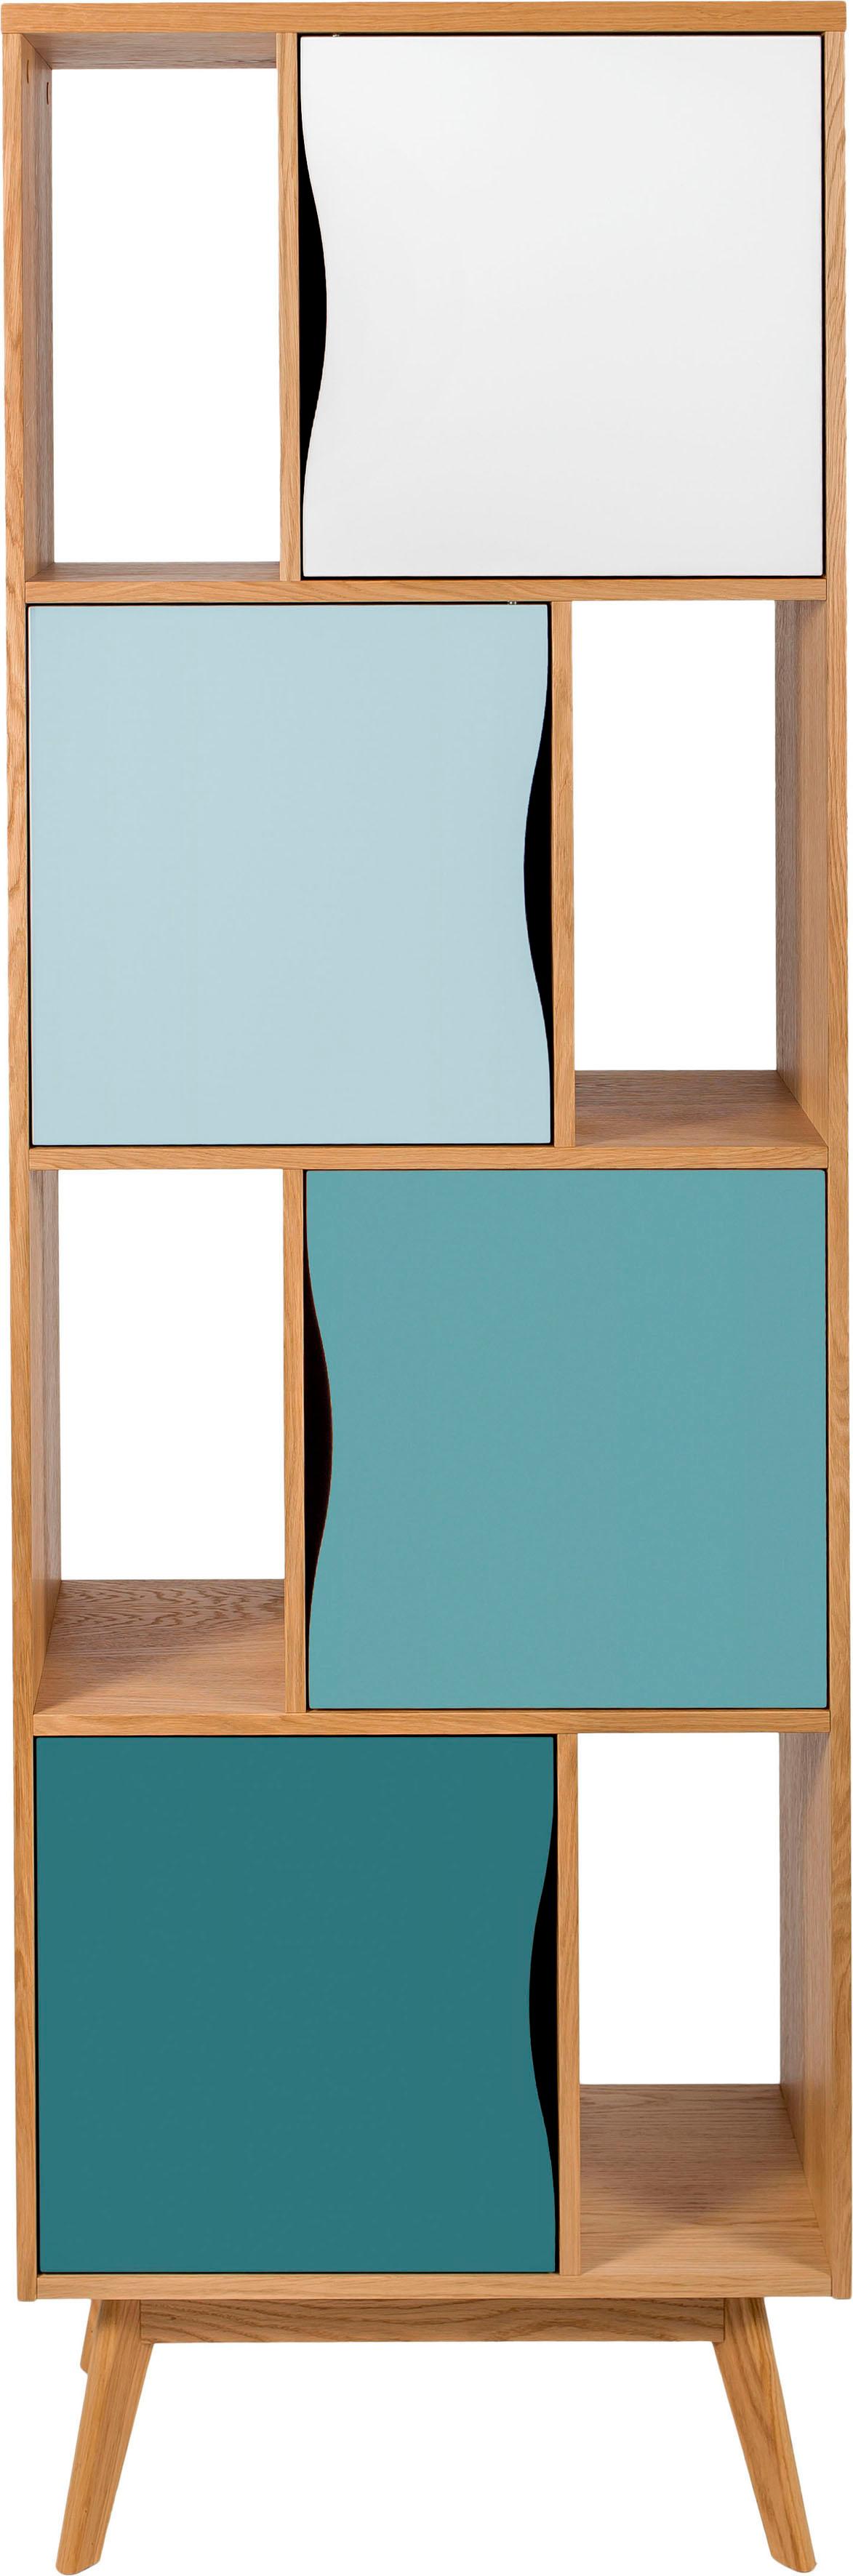 Bücherregal „Avon“, Höhe 191 cm, Holzfurnier aus Eiche, schlichtes skandinavisches Design, eiche/mint